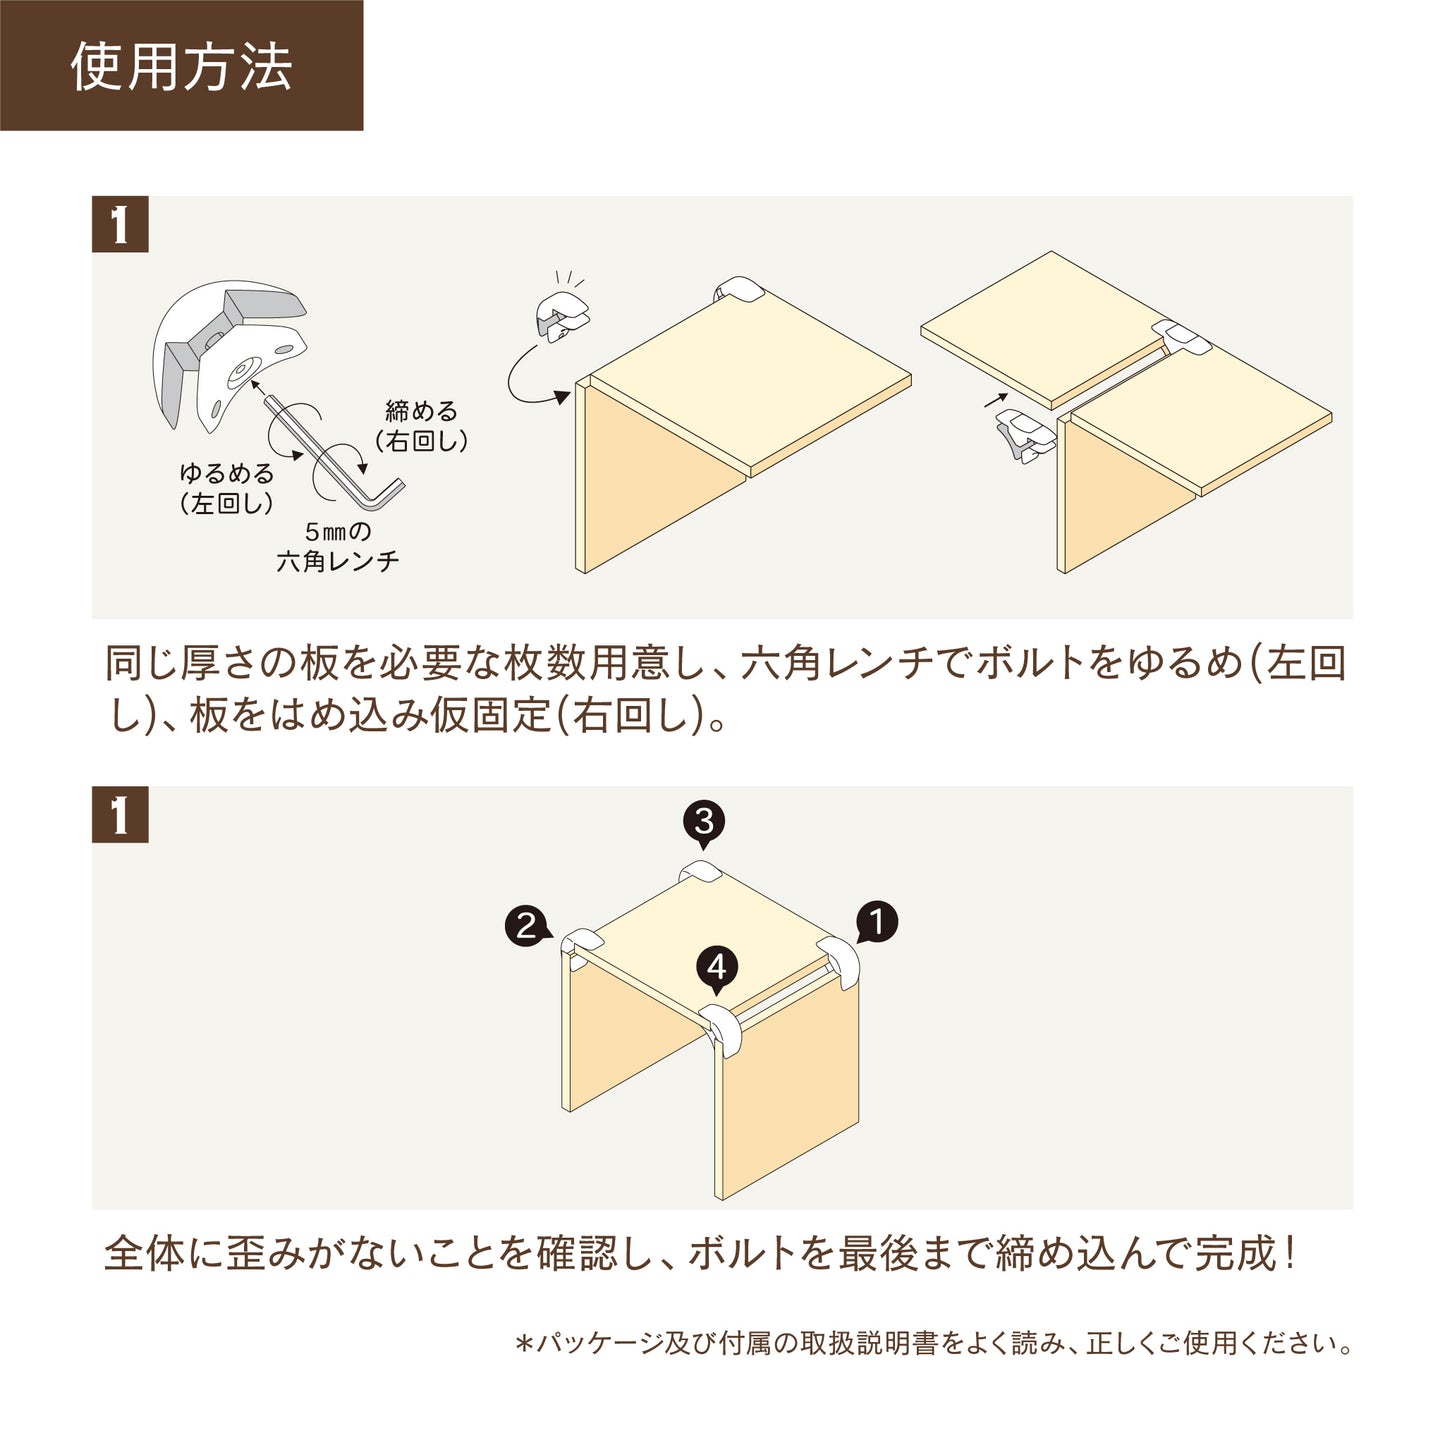 ハグブロック L型｜【ハグブロック公式ショップ】はさんで固定するだけで簡単にオリジナル家具が作れるアイテム。アウトドアにも